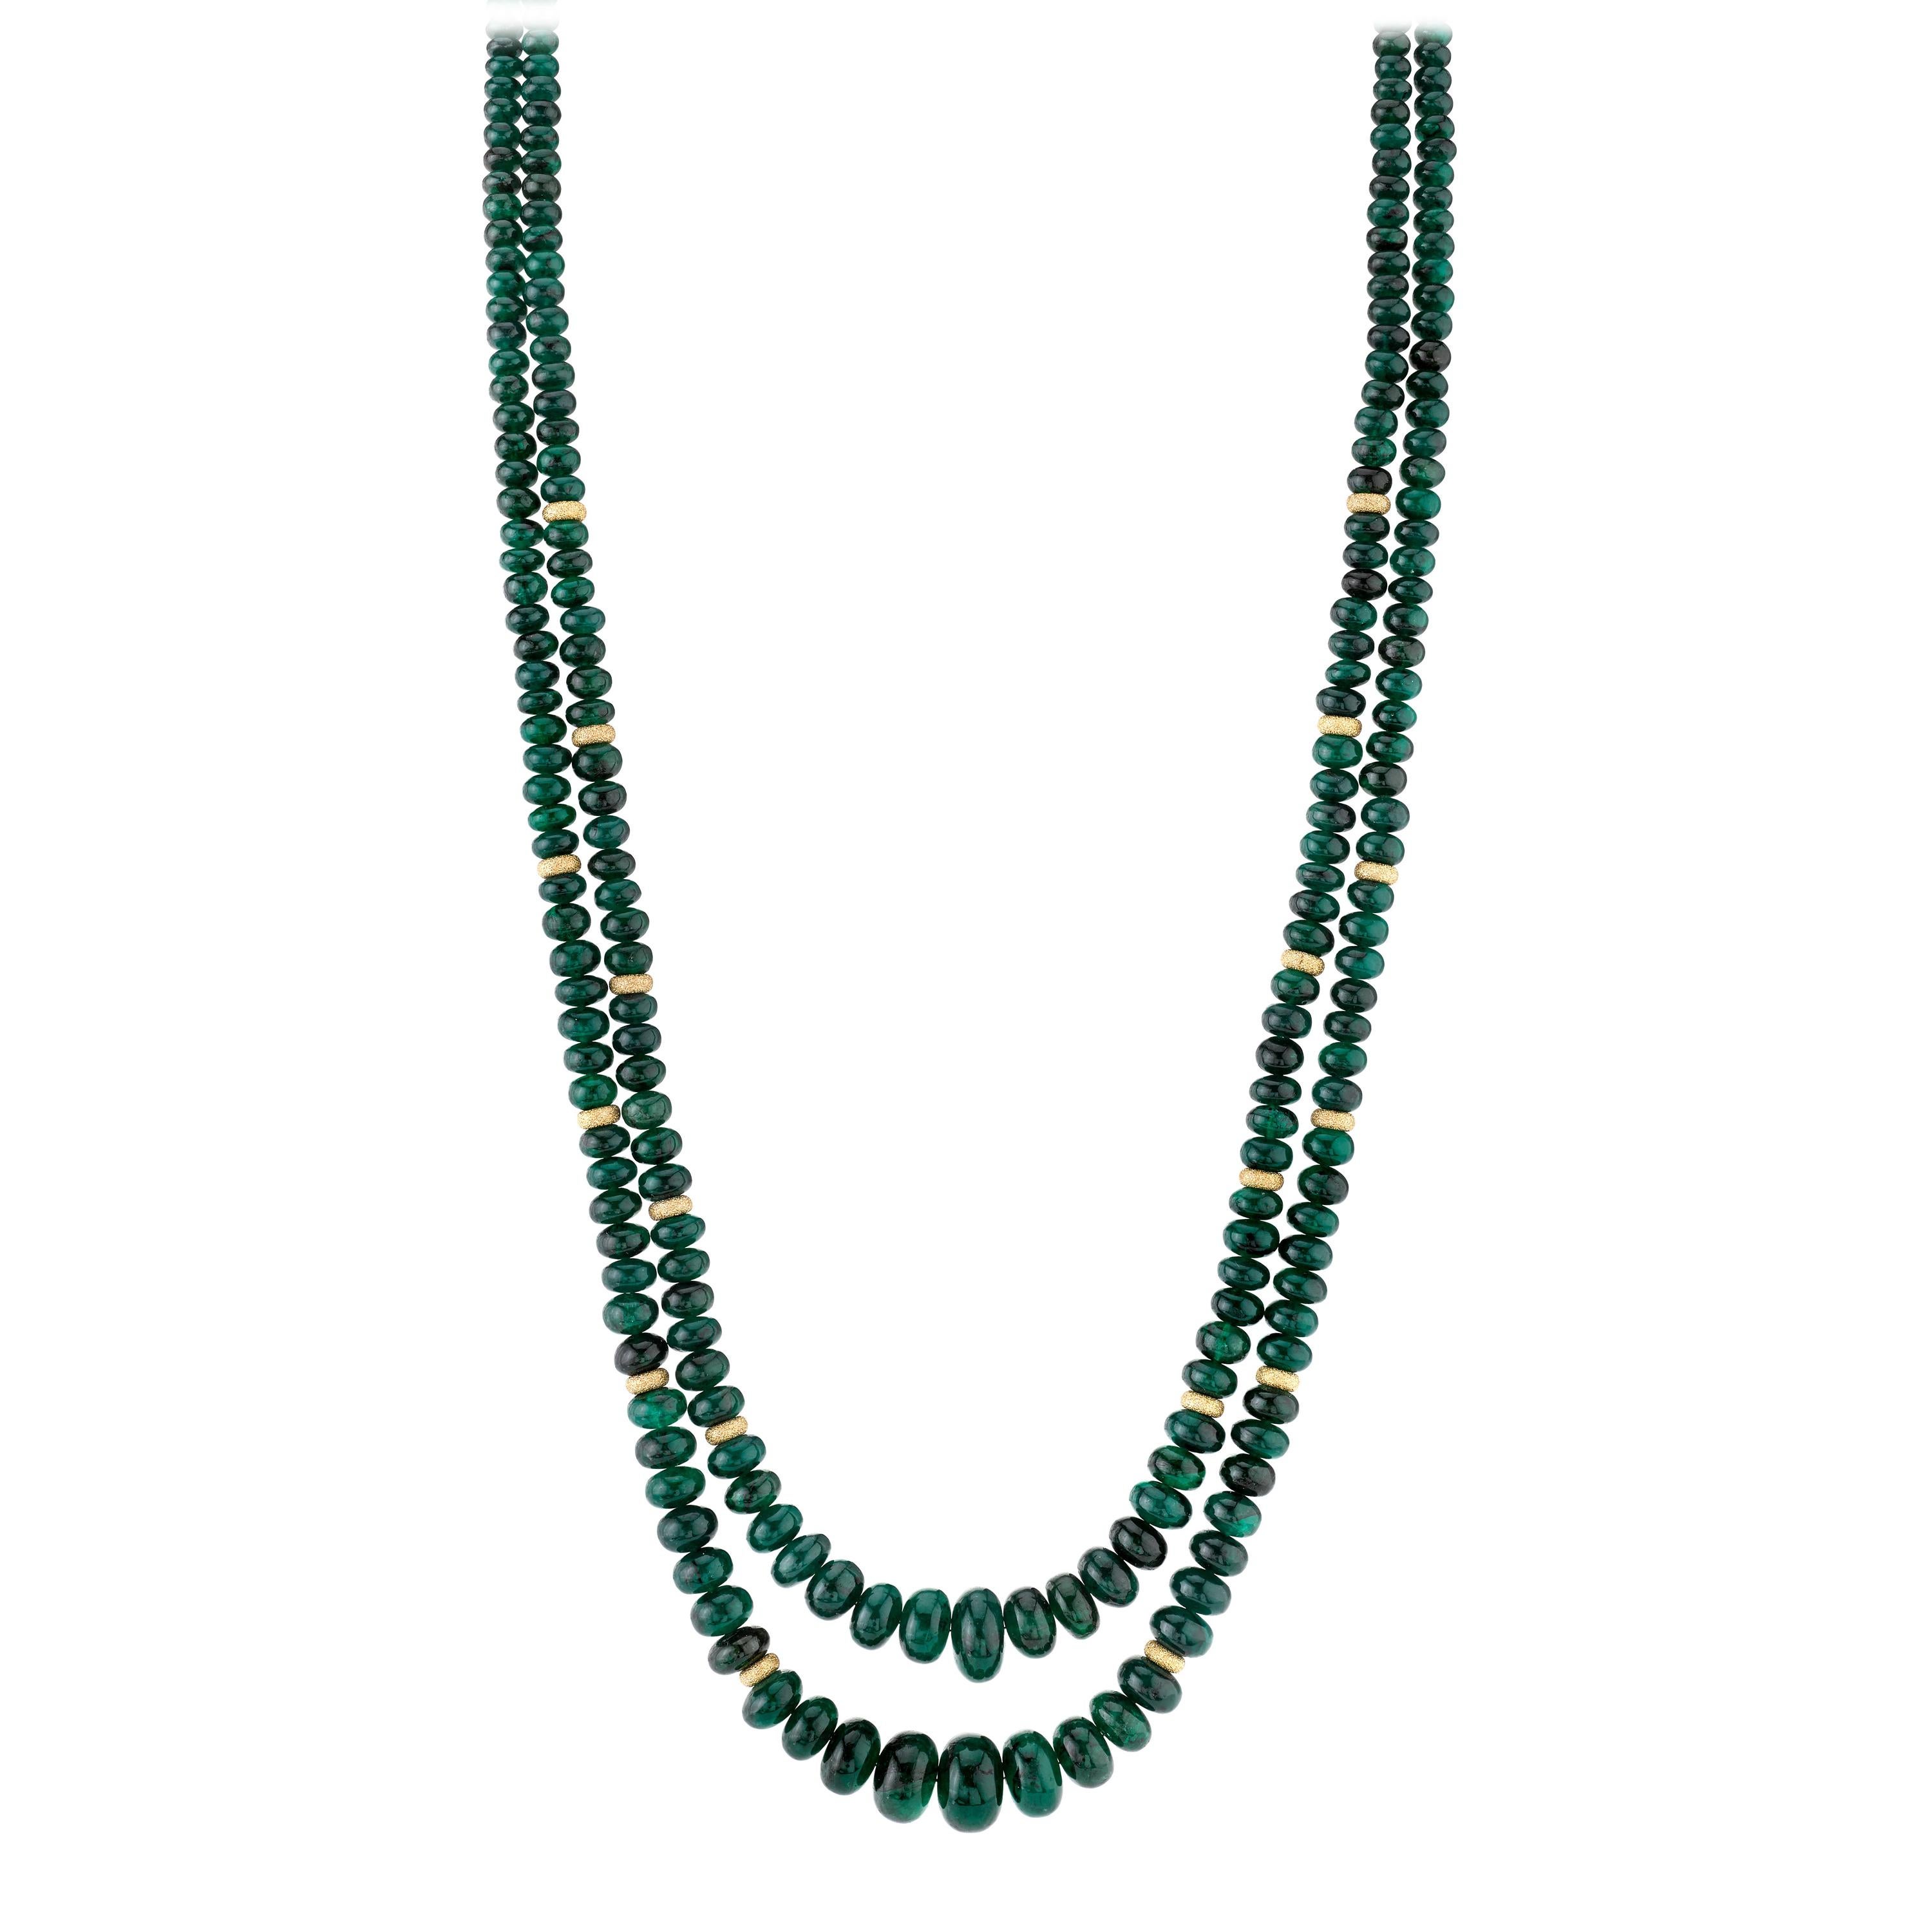  Collier à plusieurs rangs de perles d'émeraudes avec accents en or jaune, 200 carats au total